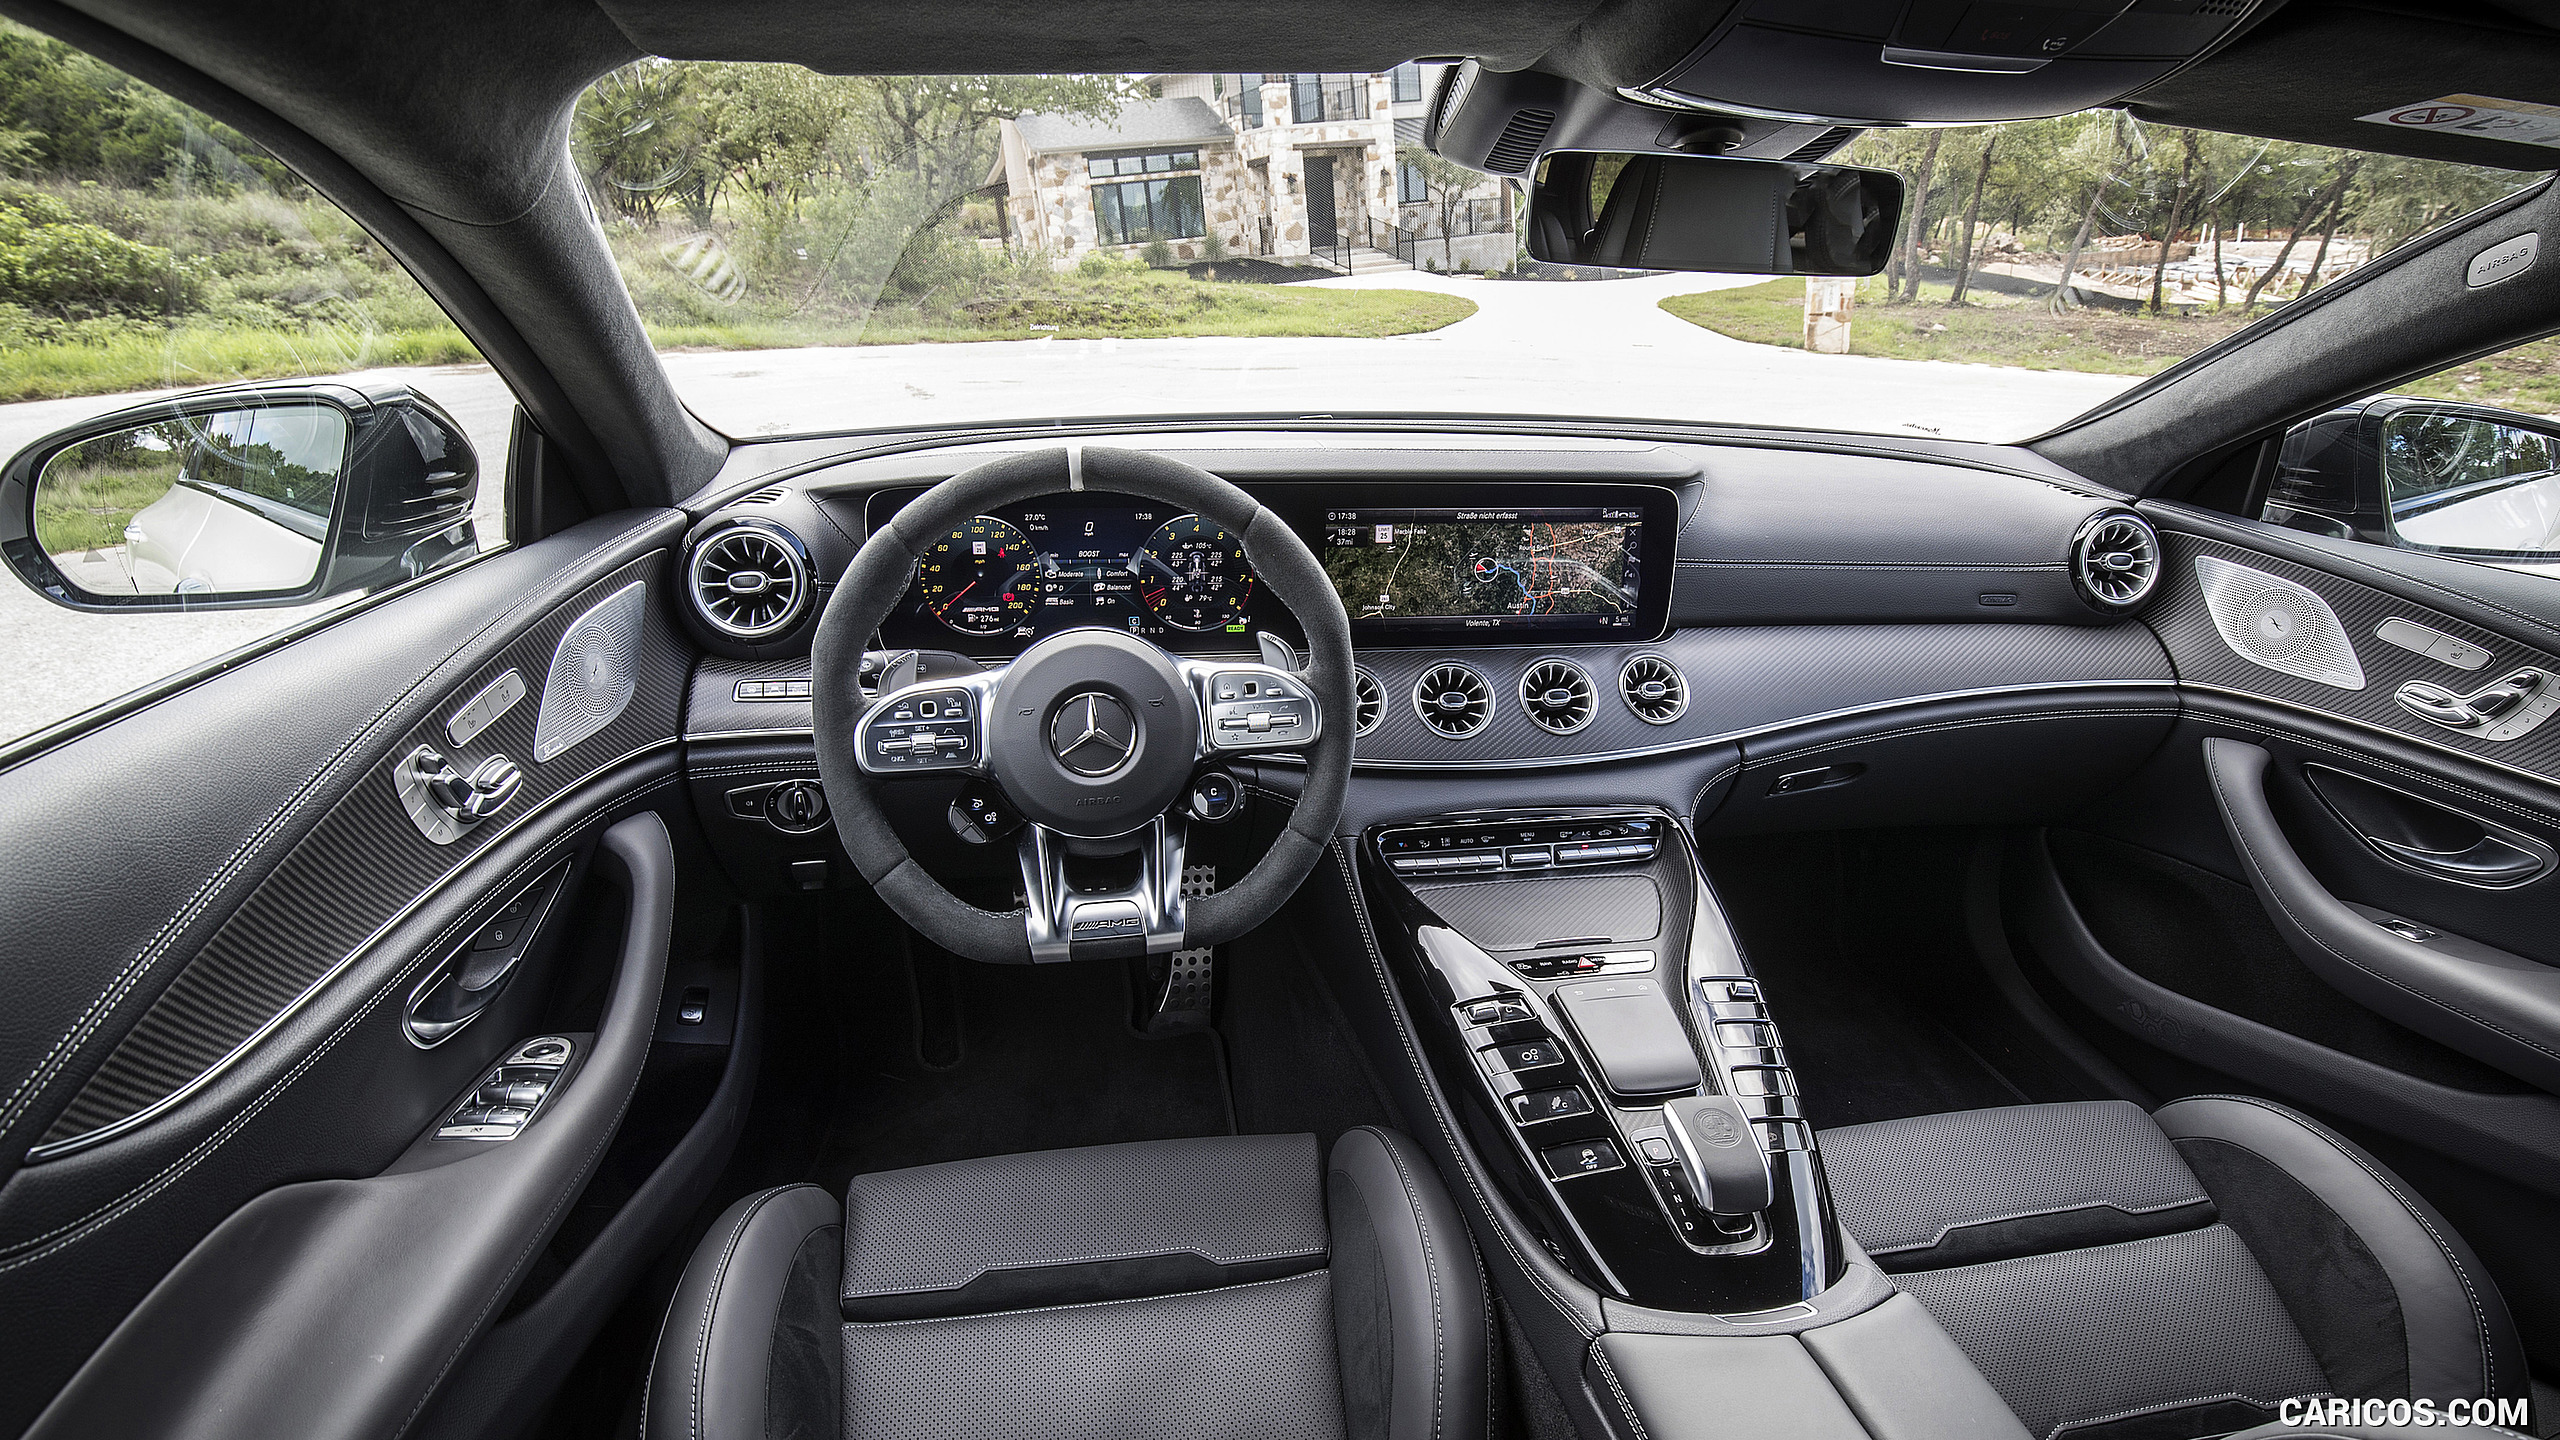 2019 Mercedes-AMG GT 53 4-Door Coupe - Interior, Cockpit, #278 of 427